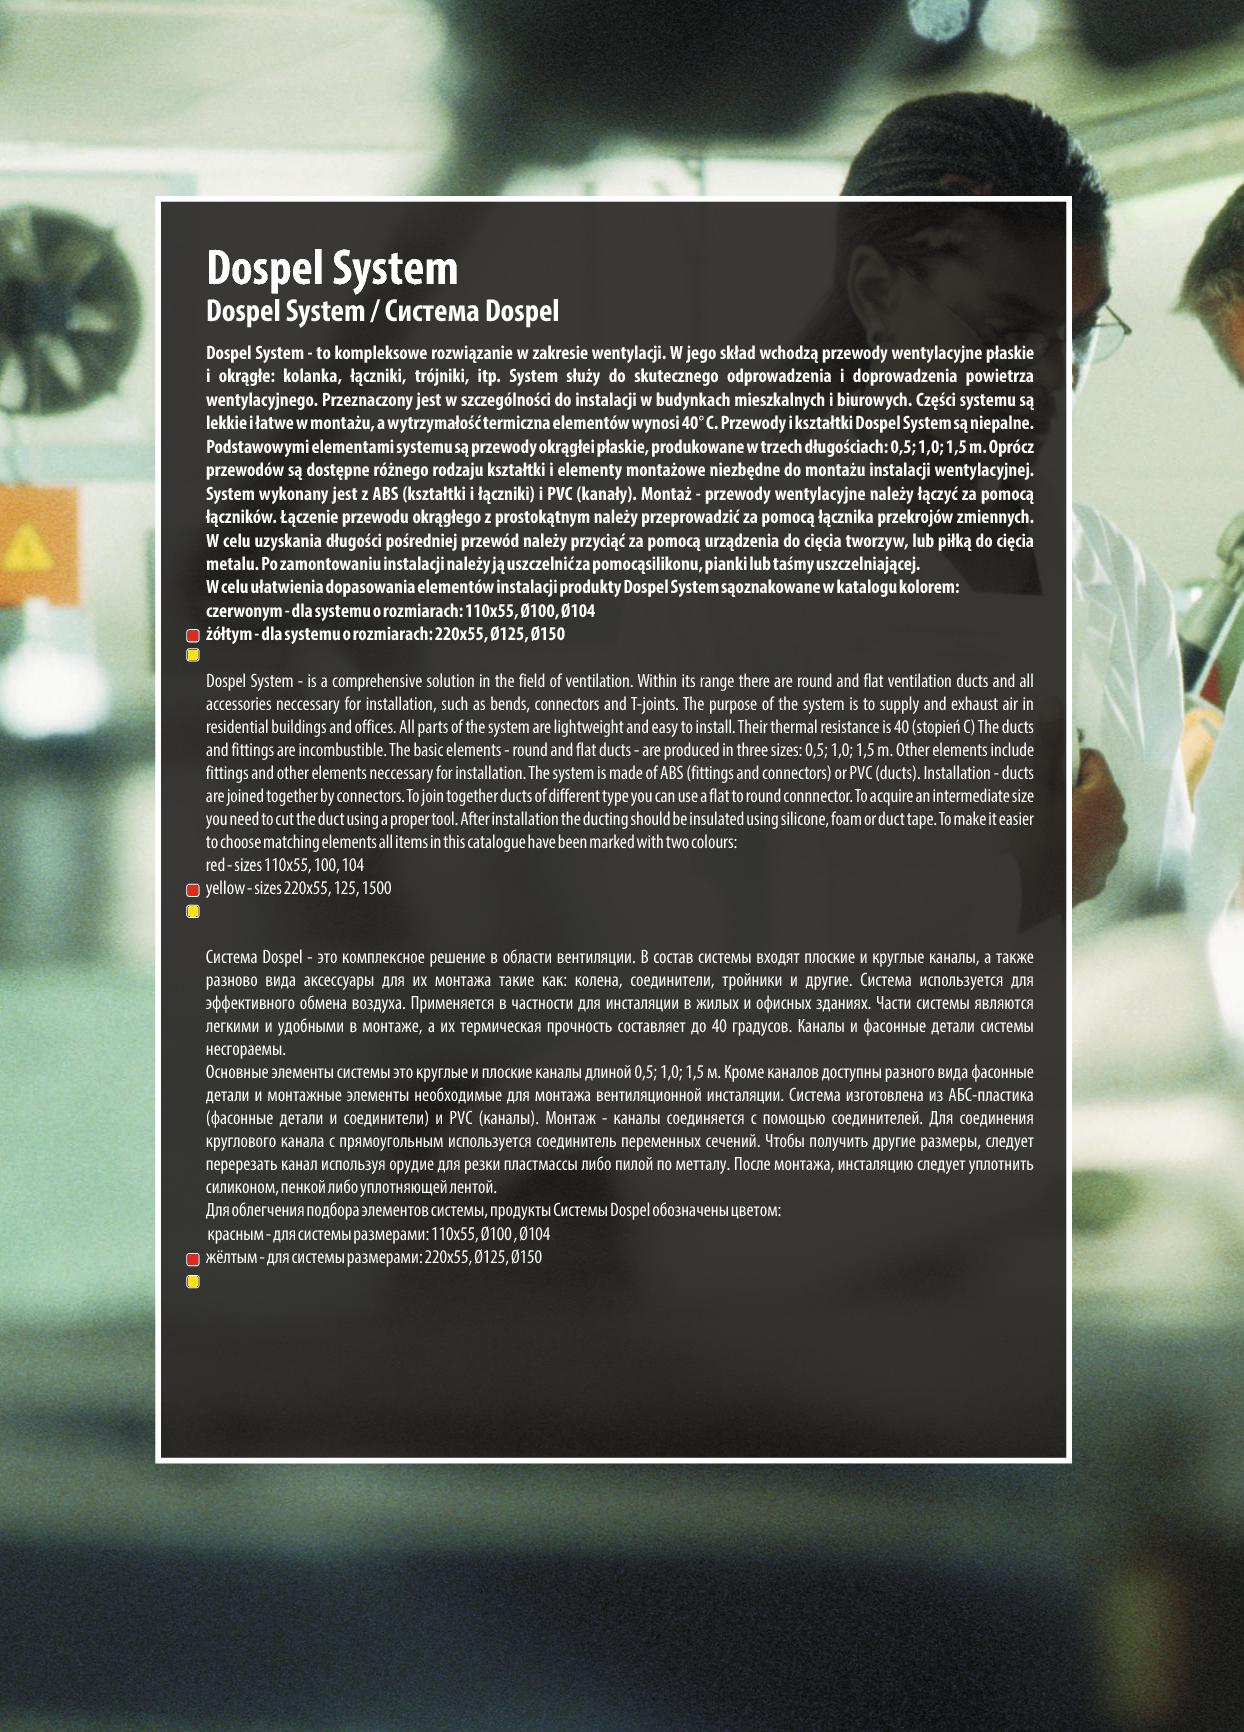 DOSP_Catalog_Dospel system